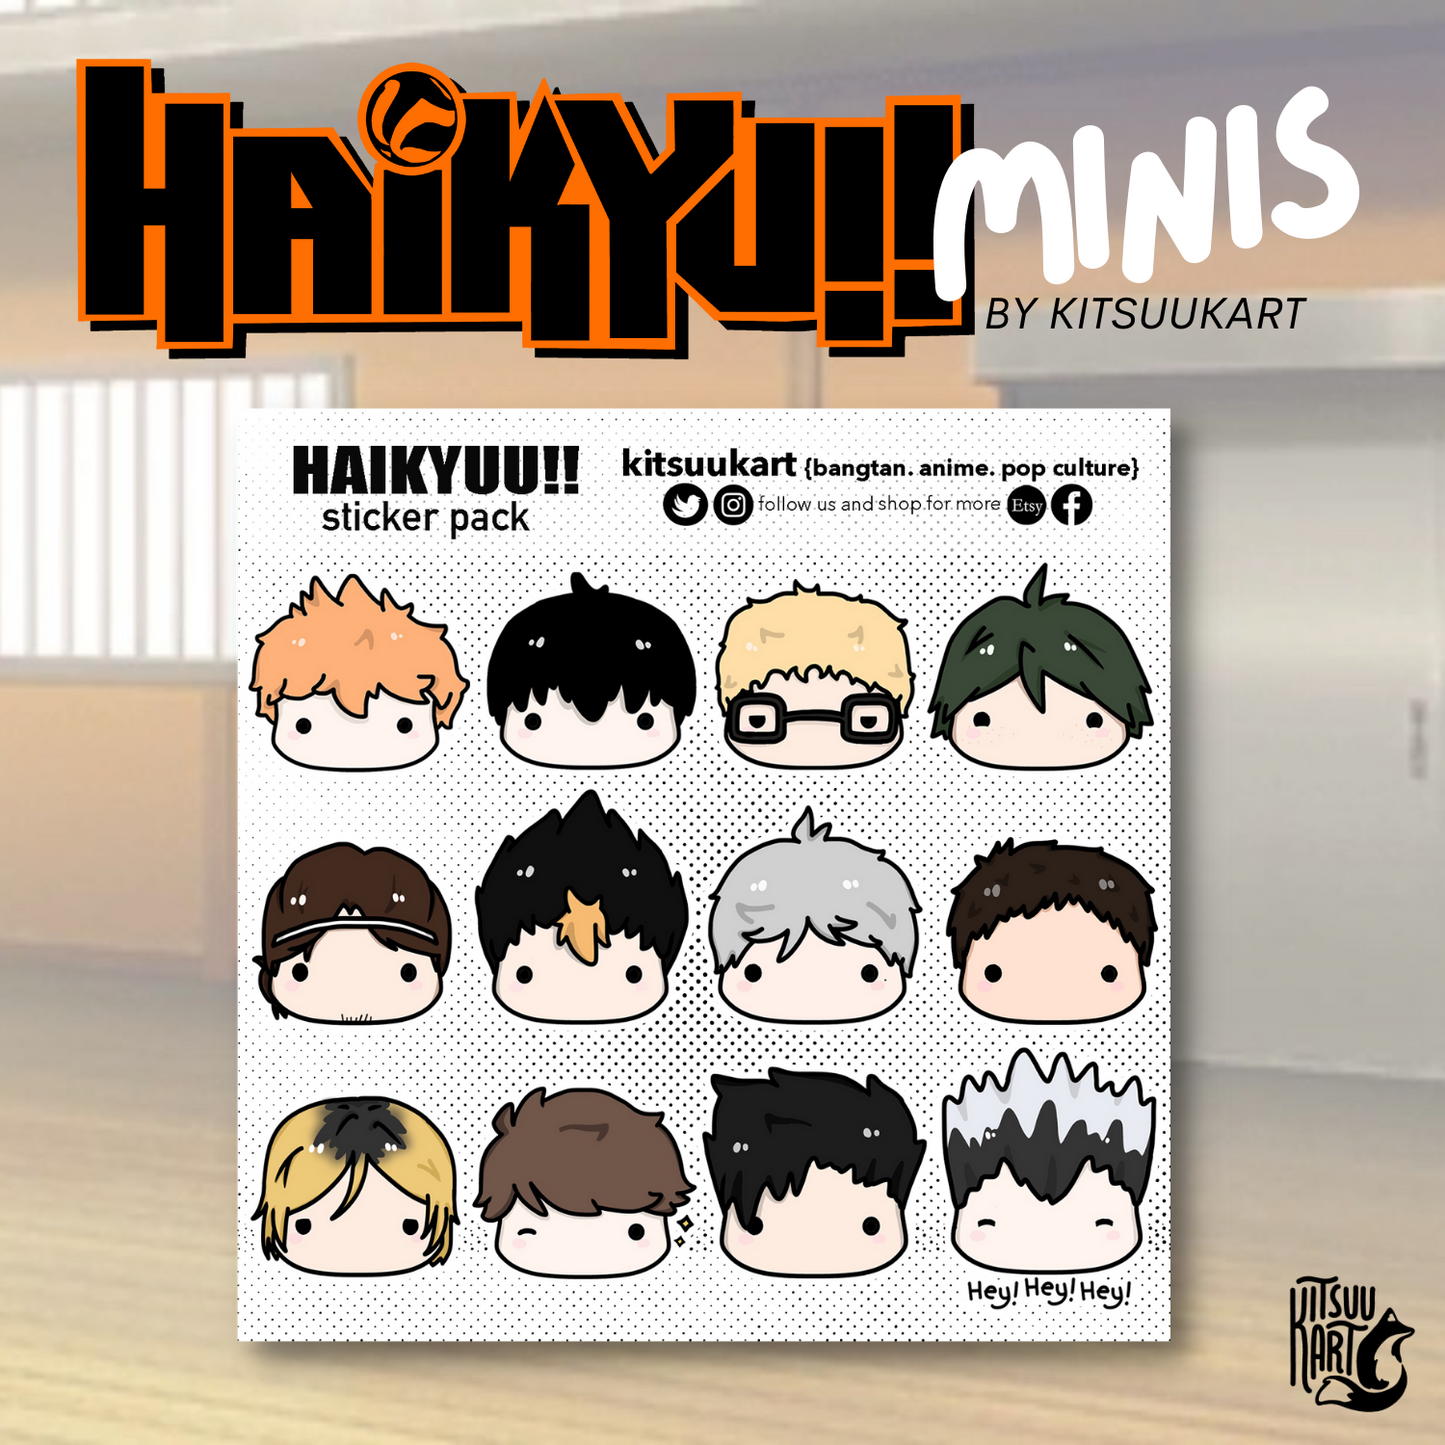 Updated character sheets of these - Haikyuu - Hey Hey Hey